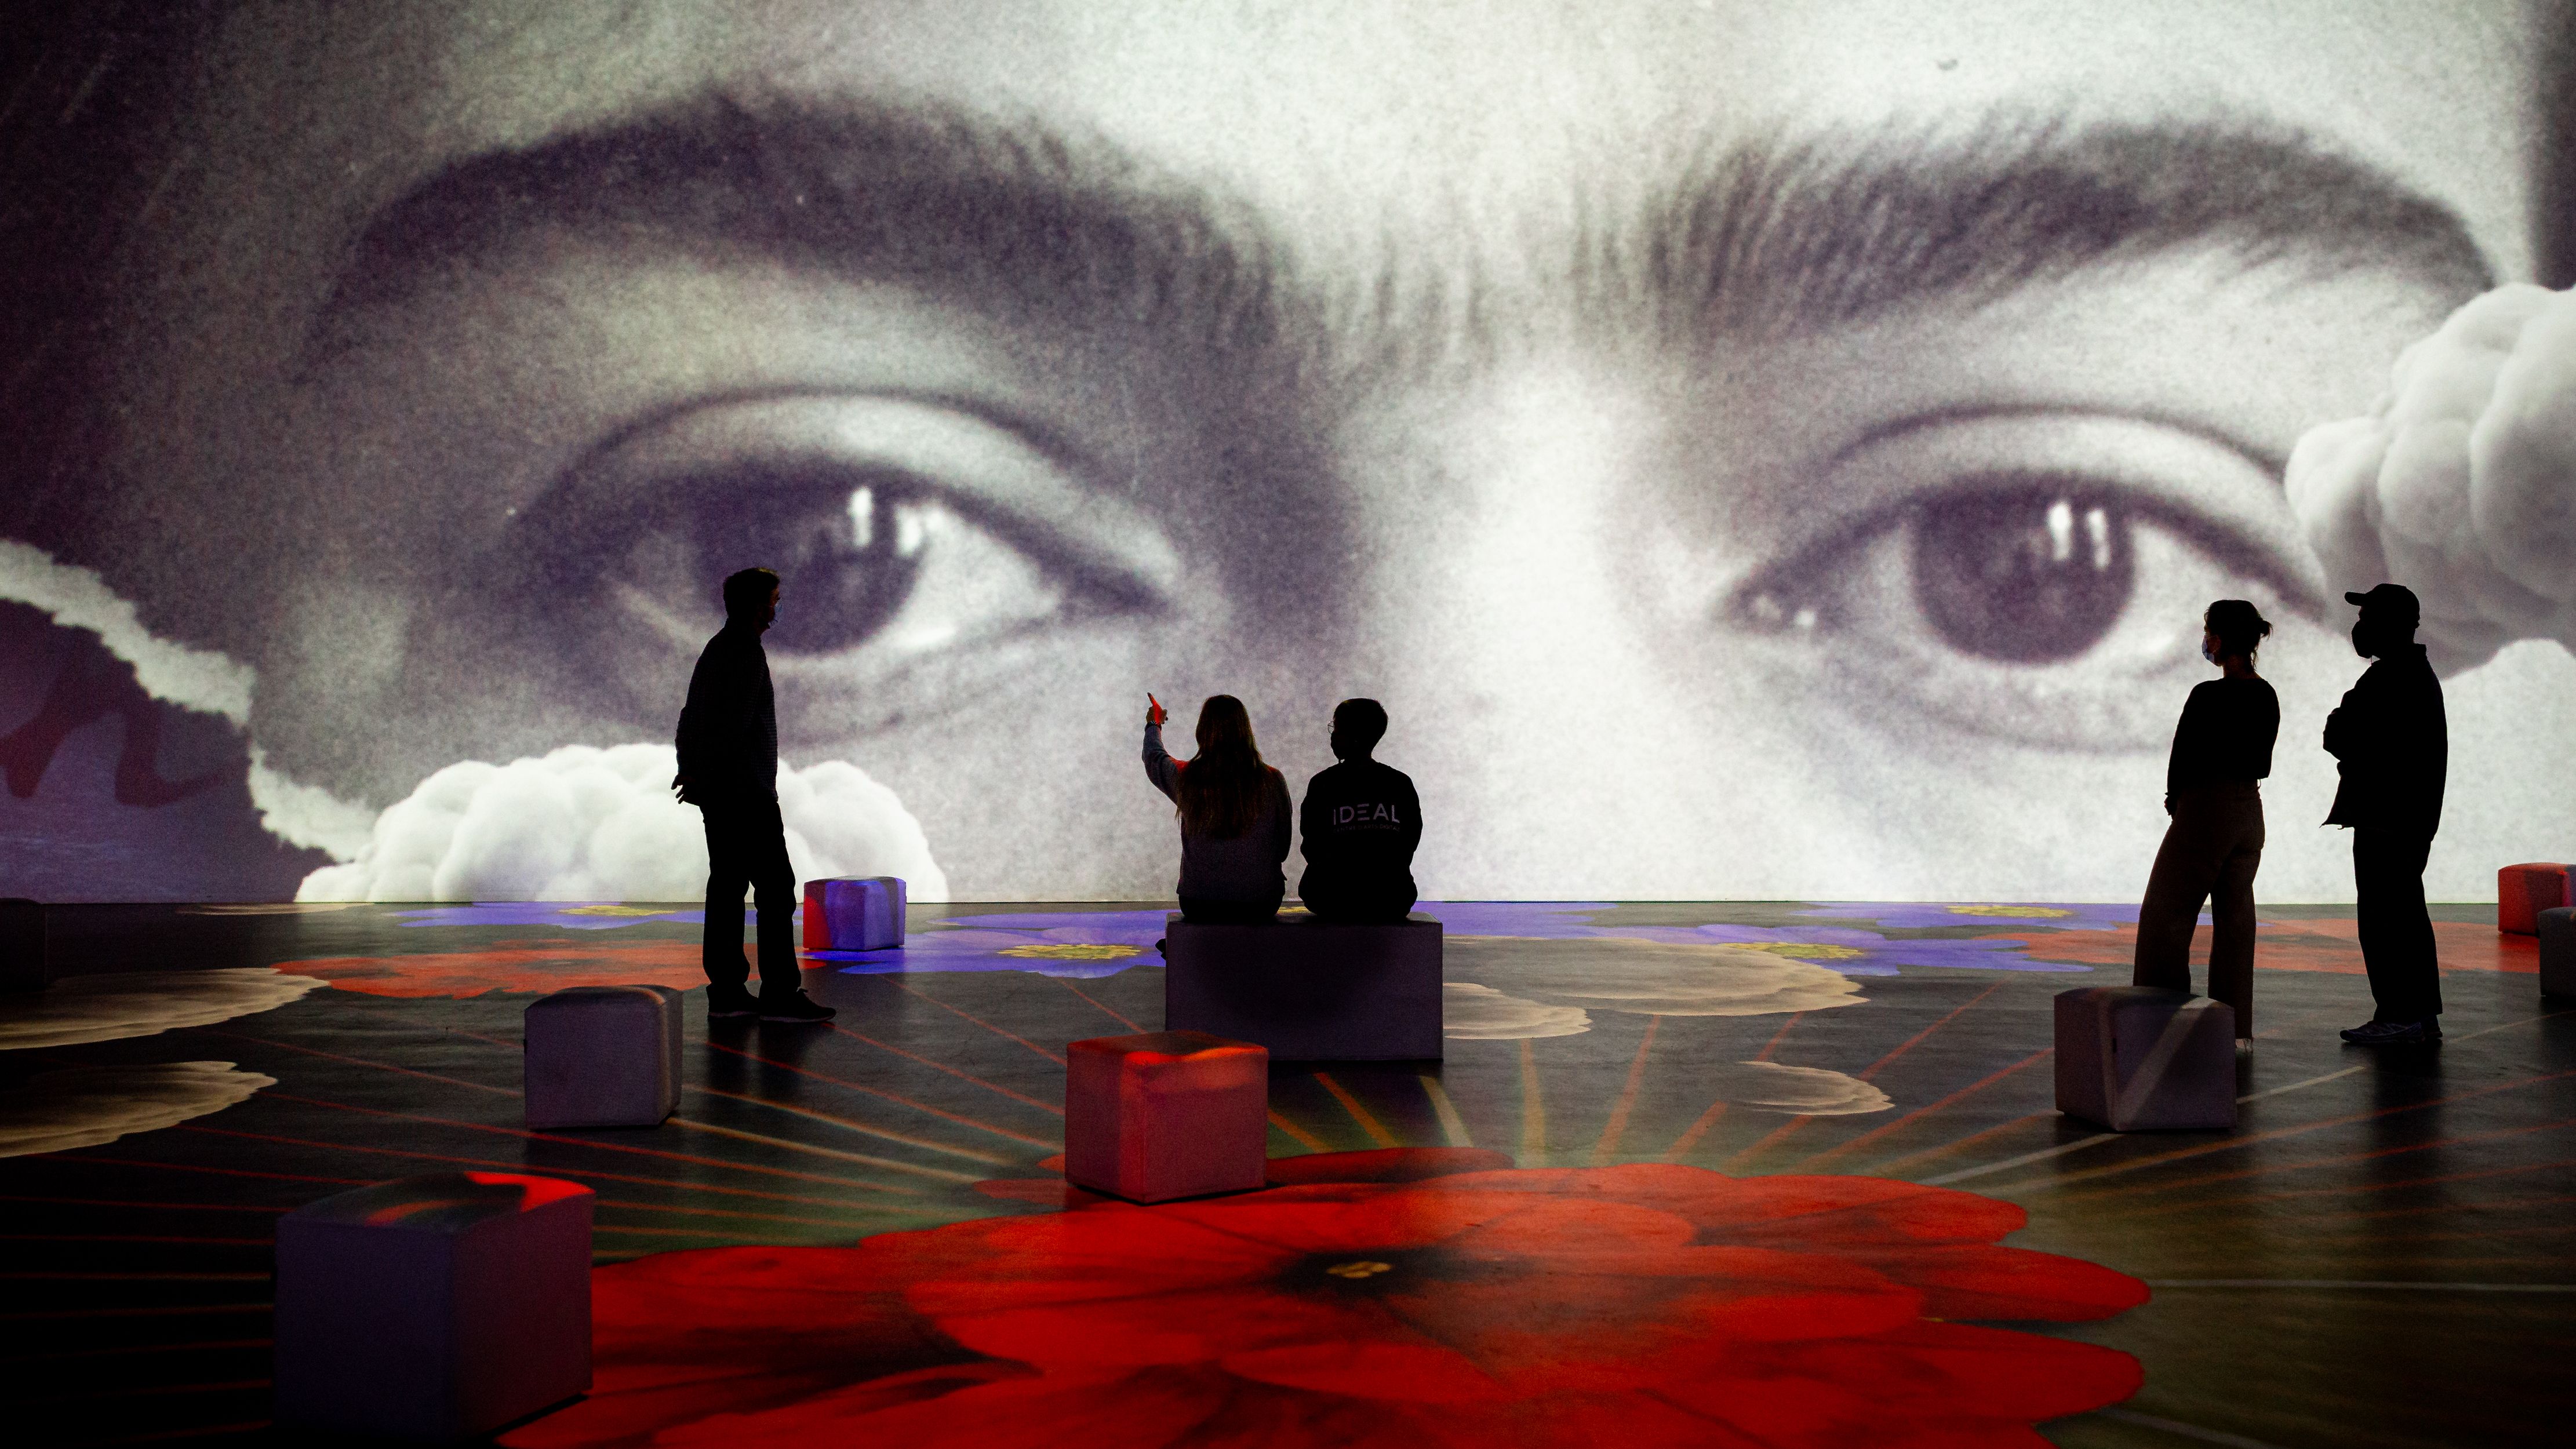 Découvrez qui est Frida Kahlo dans cette exposition immersive à la Galerie Horta, places pour vous ! 